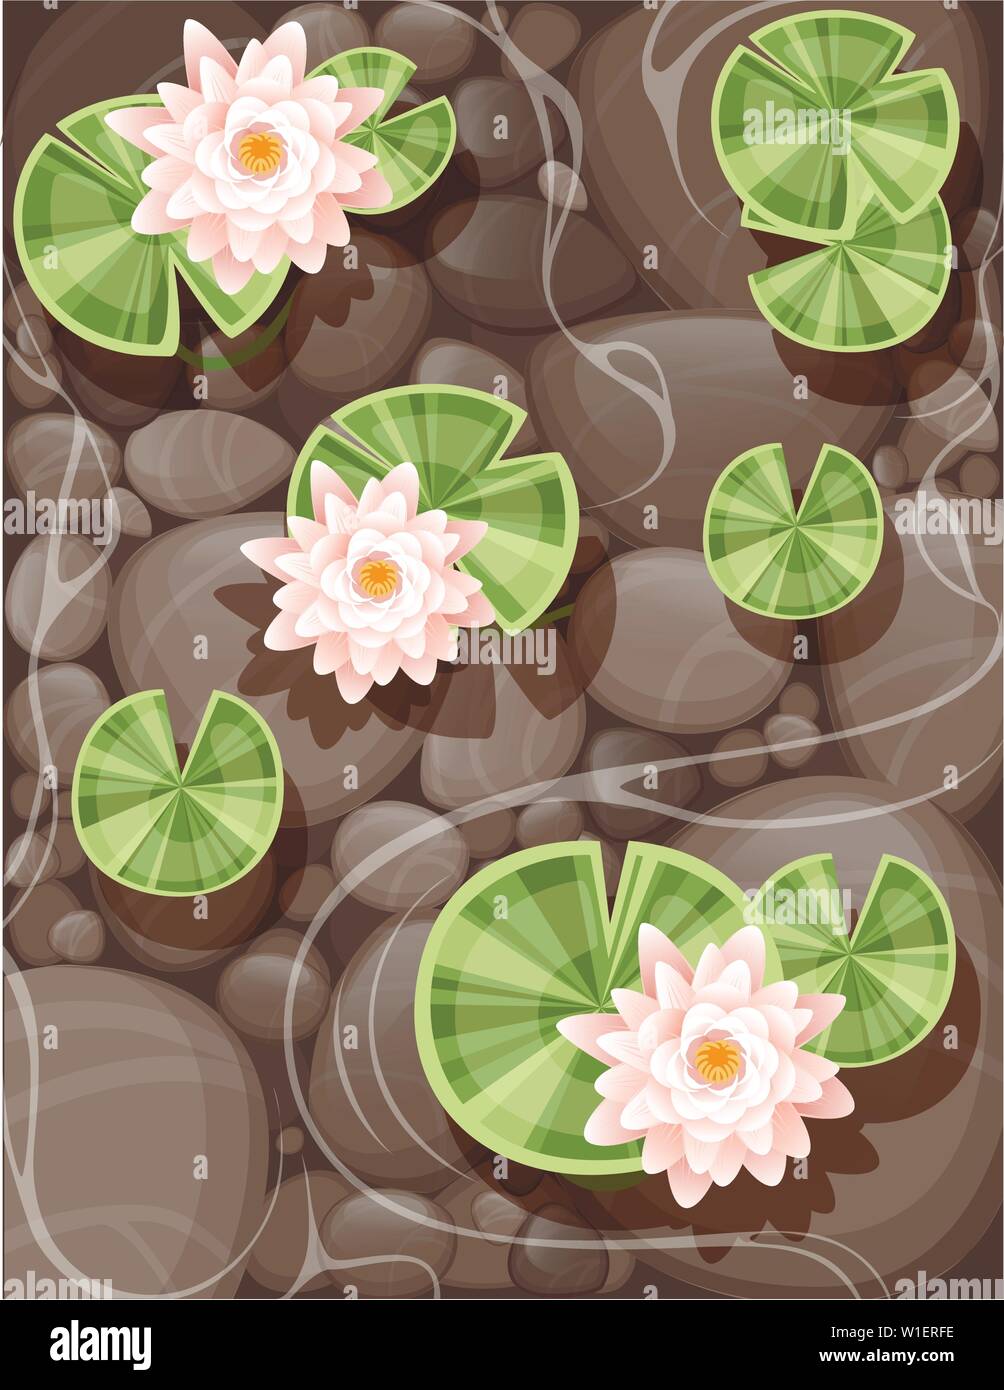 Belle lily lotus avec des feuilles vertes sur l'eau transparente et de pierre bas télévision vector illustration. Illustration de Vecteur